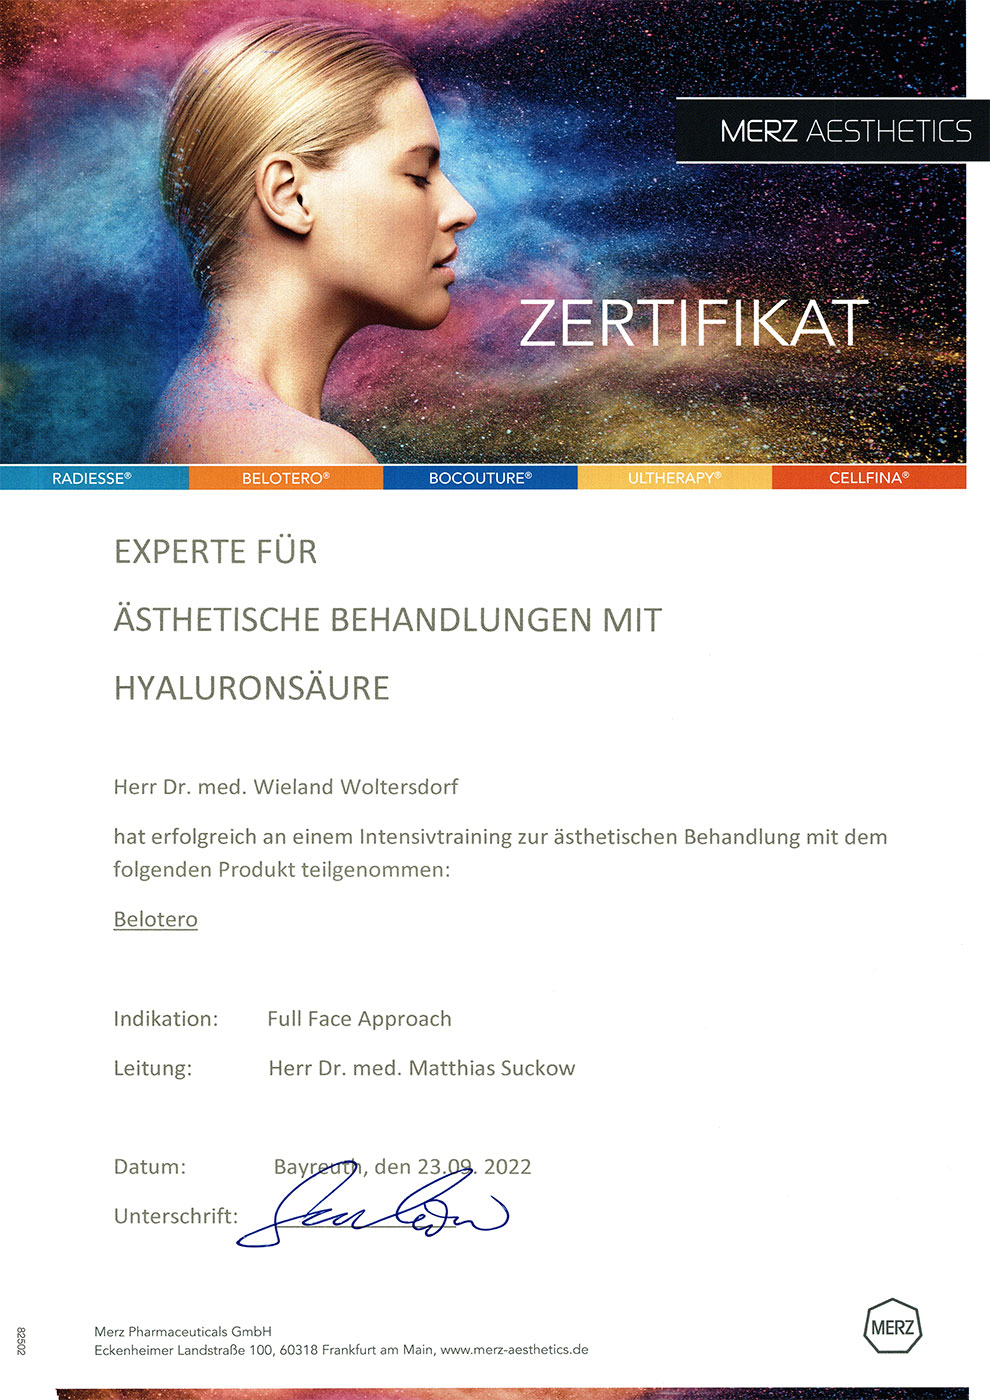 Dr. med. Woltersdorf: Zertifikat Experte für ästhetische Behandlungen mit Hyaluronsäure (Belotero) (Merz Aesthetics, 23.09.2022)